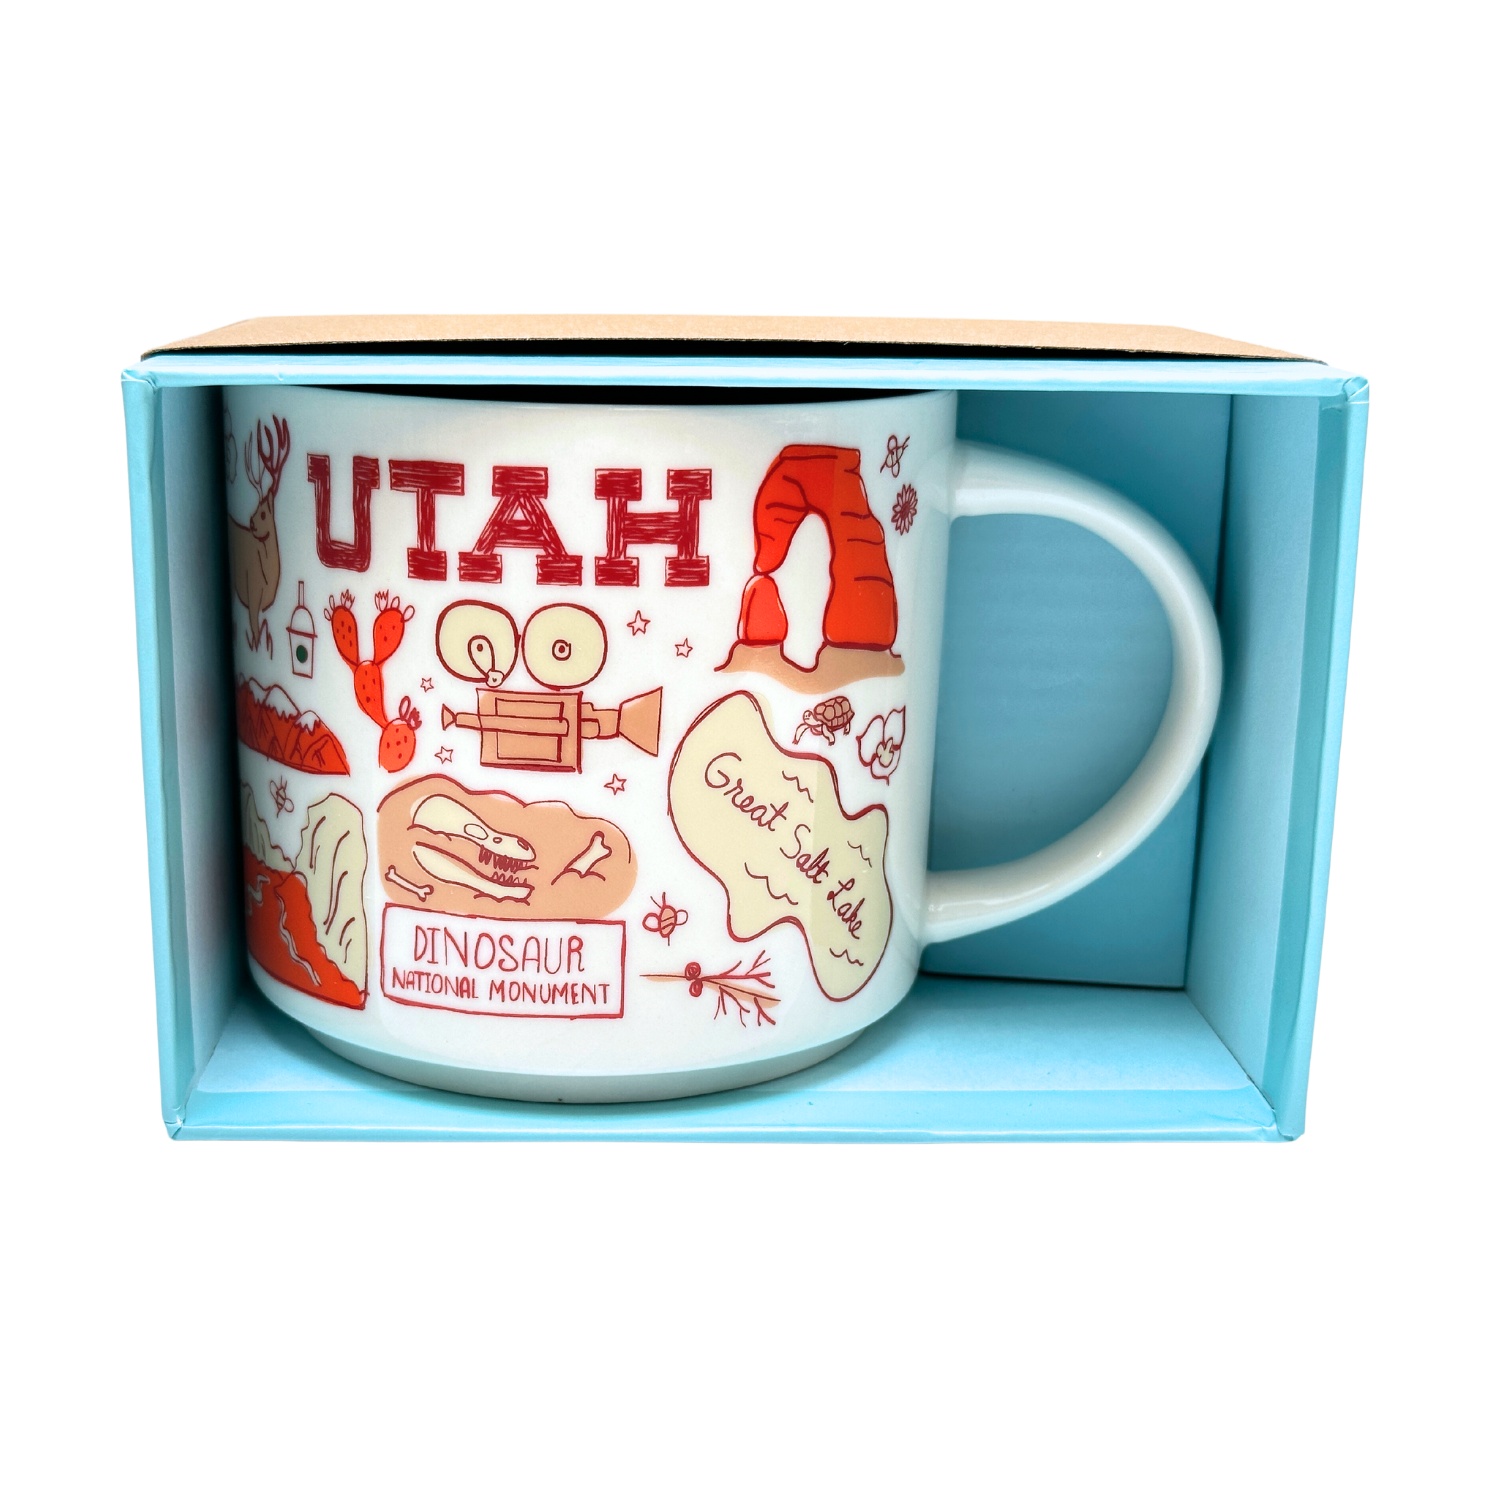 Starbucks Been There Series Utah Ceramic Mug, 14 Oz